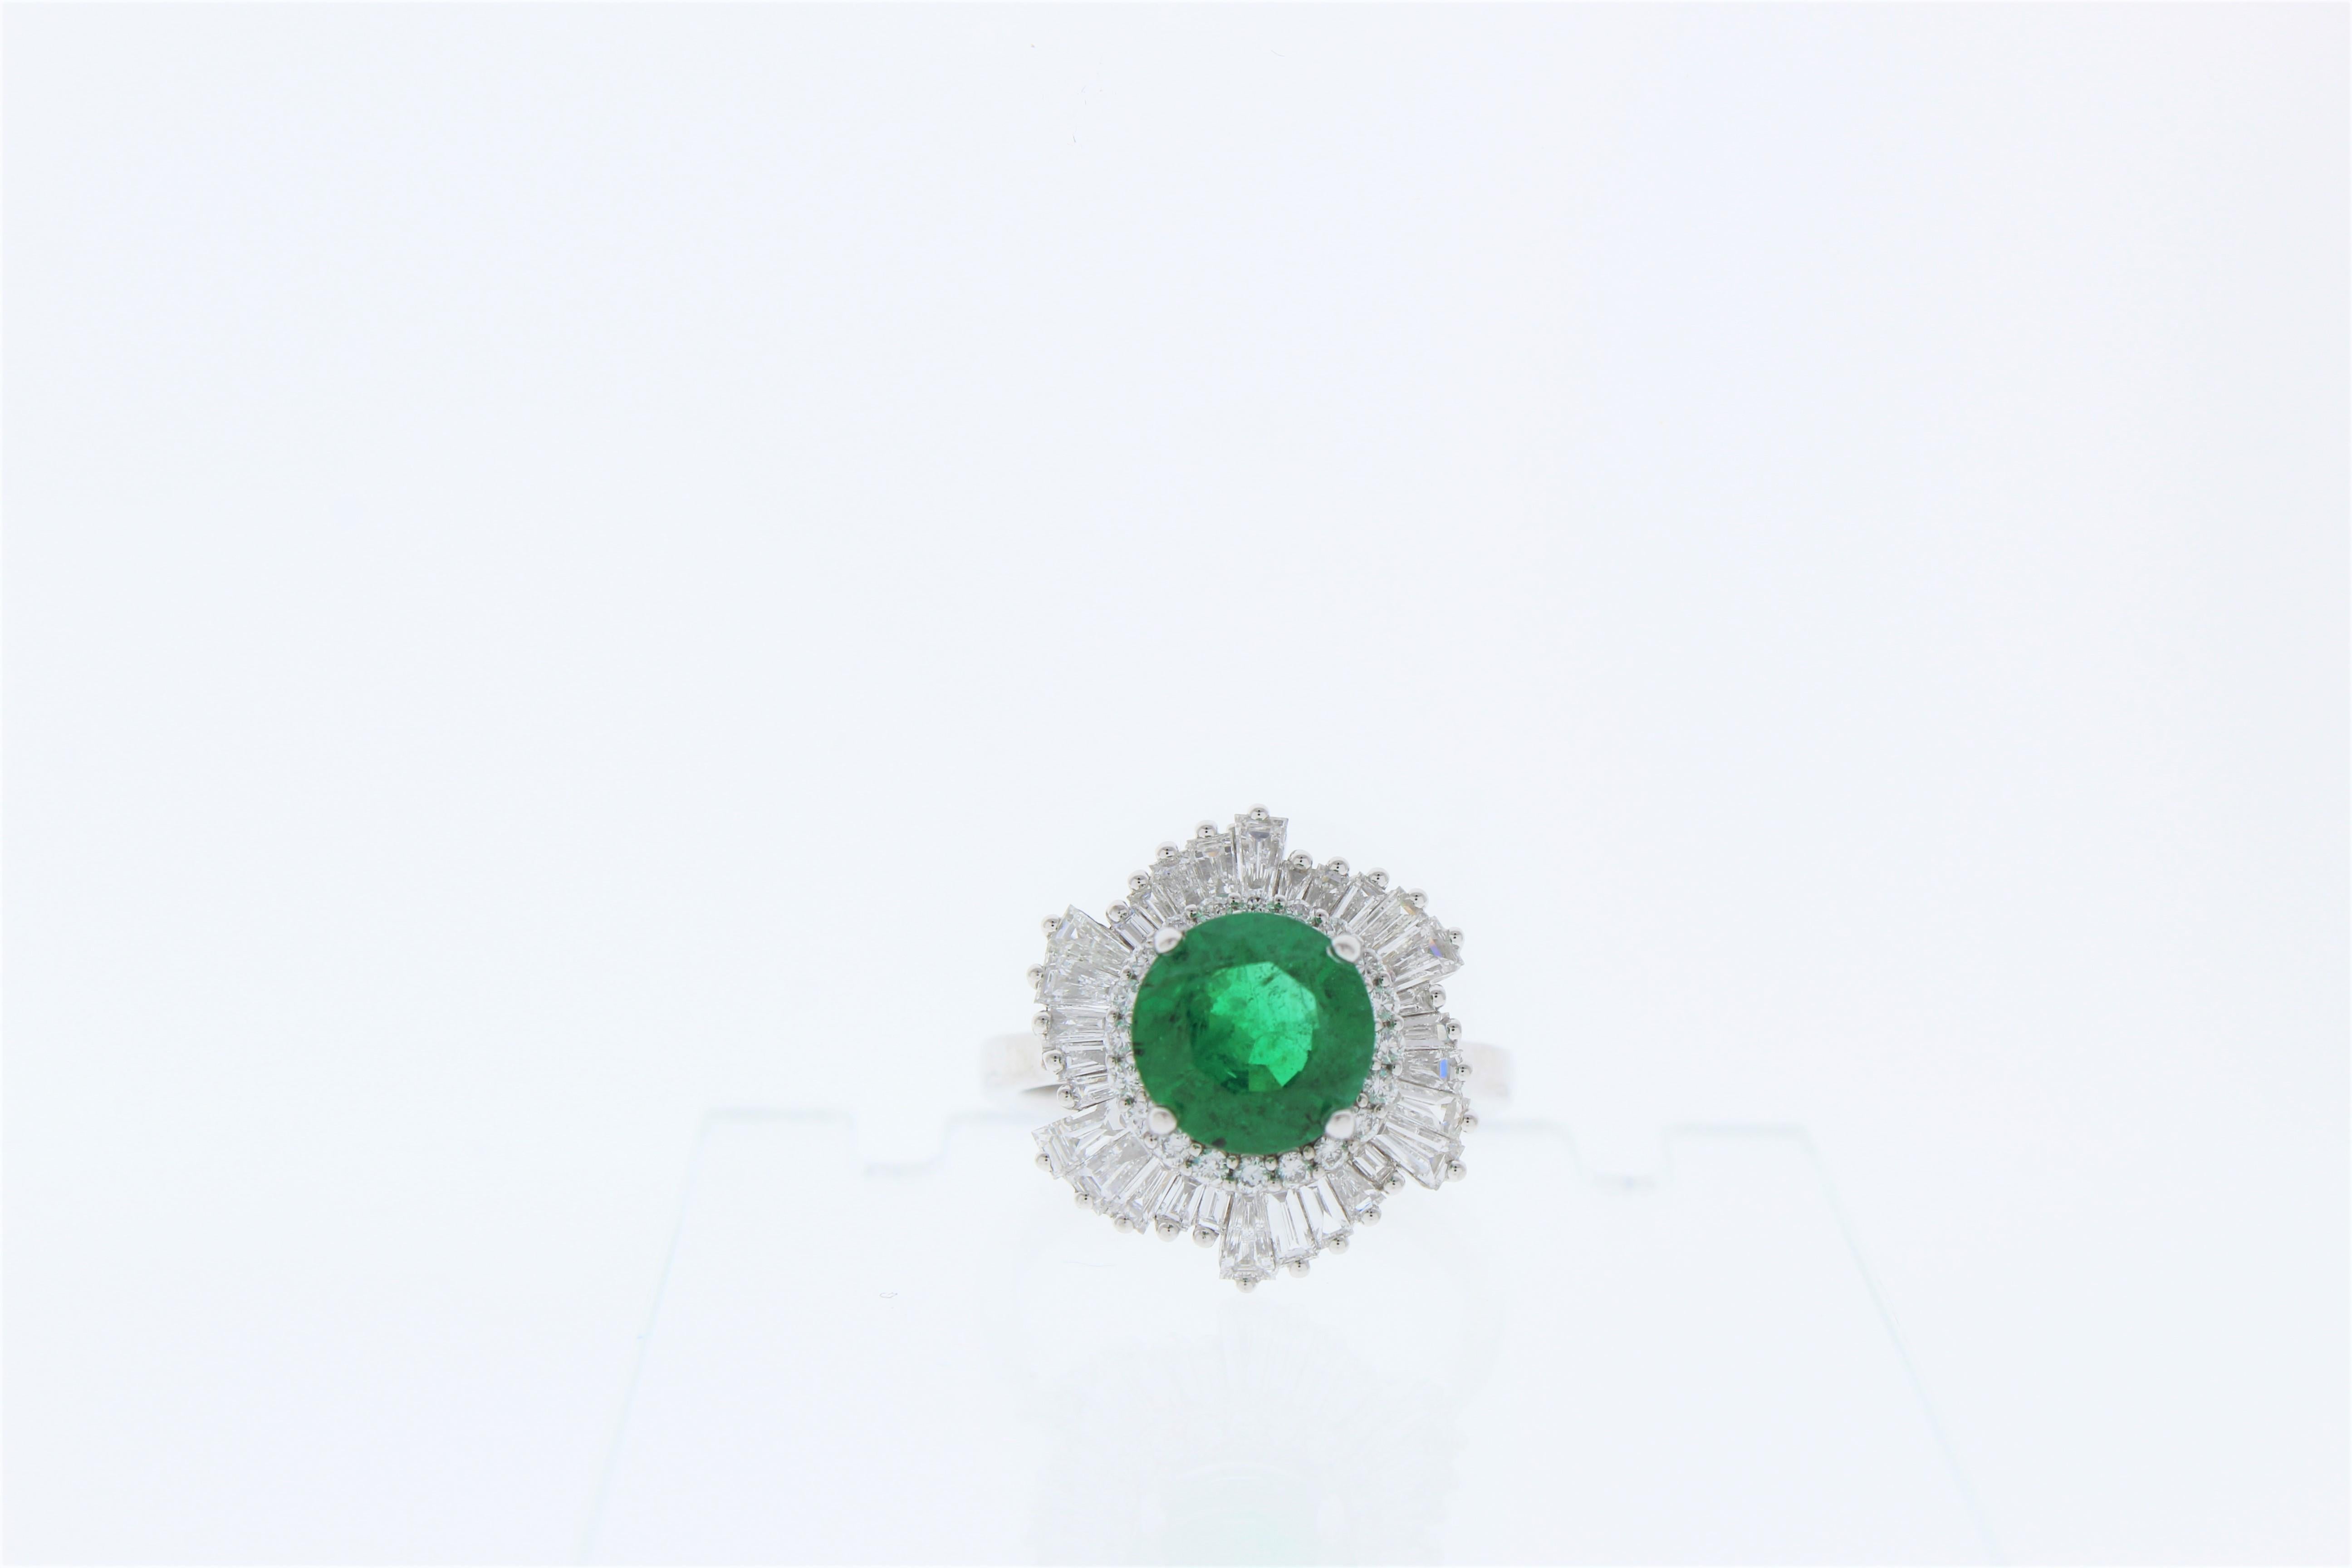 Sieh dir diese Schönheit an! Dieser atemberaubende Ring mit grünem Smaragd und Diamanten ist schlicht im Design, aber nicht gewöhnlich in der Farbe. Dieses atemberaubende Schmuckstück ist mit einem runden 2.31 Karat Smaragd besetzt. Der Smaragd